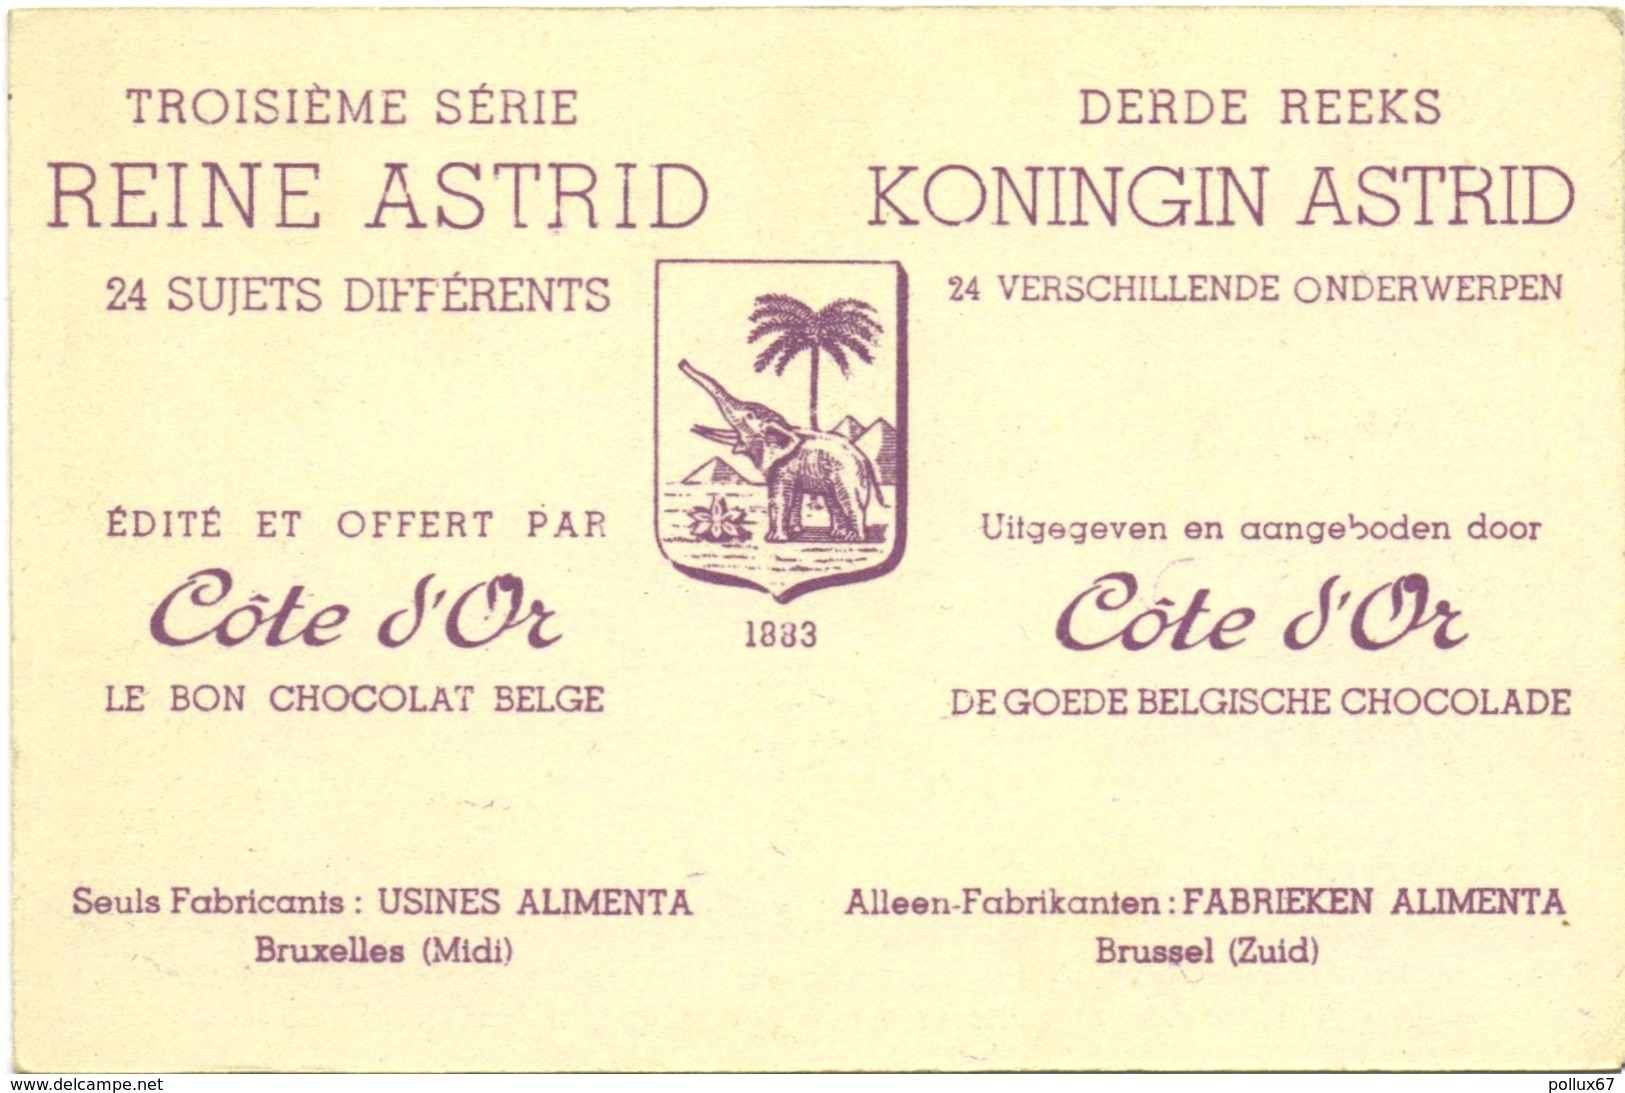 CARTE IMAGE PUBLICITAIRE CHOCOLAT CÔTE D'OR. TROISIEME SERIE : REINE ASTRID N° 7 - Chocolat